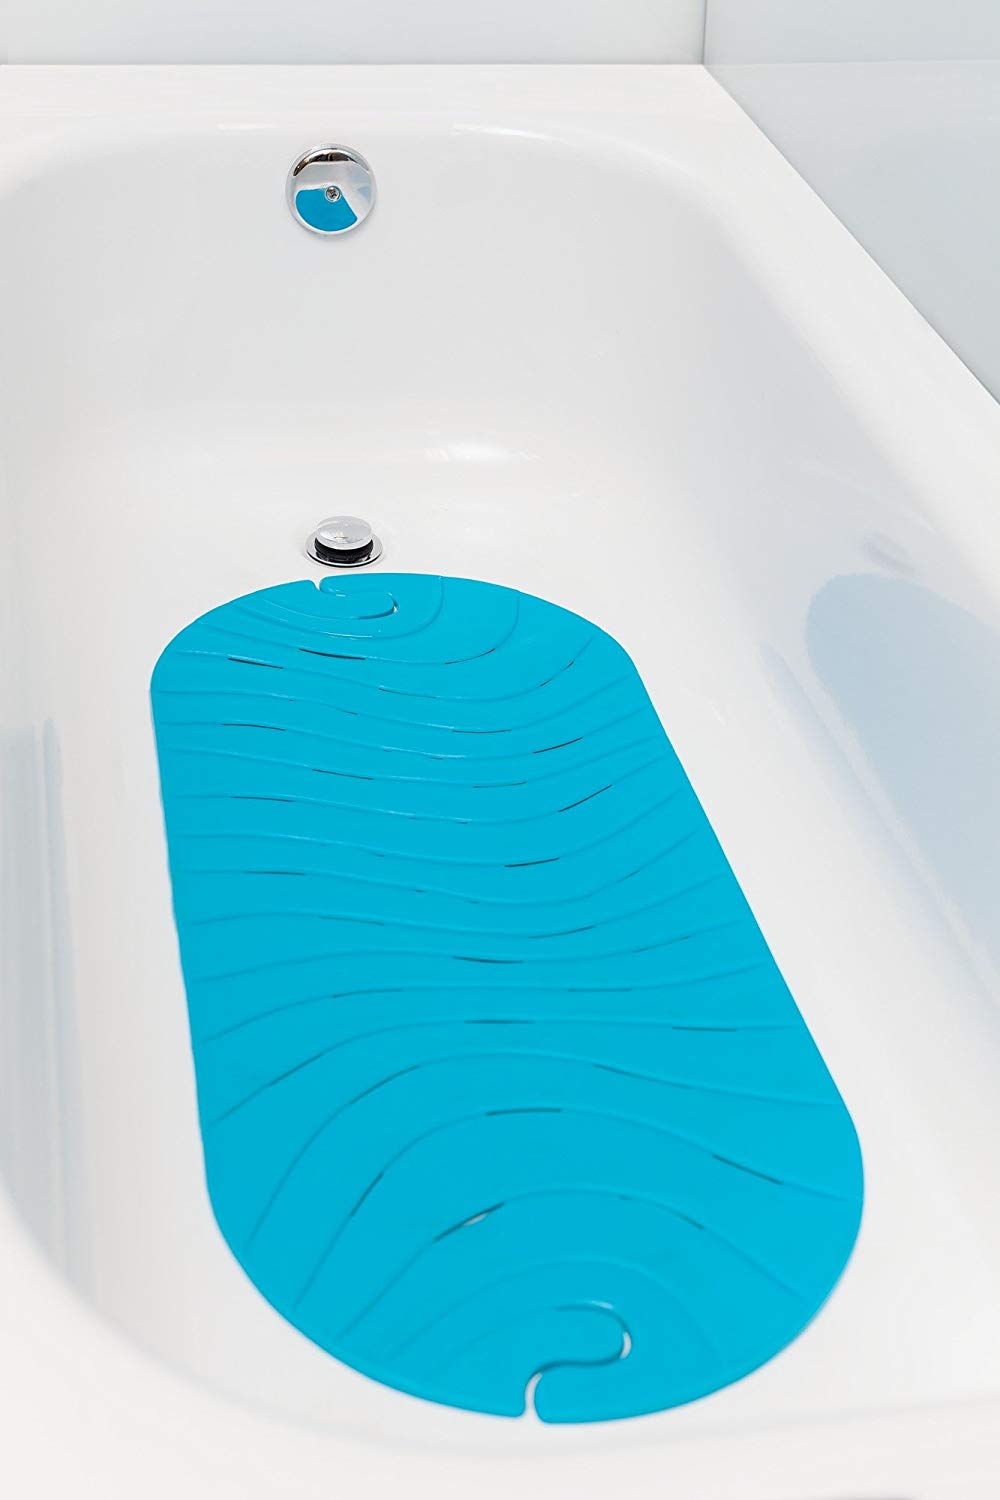 Bathtub-mats-prevent-slipping